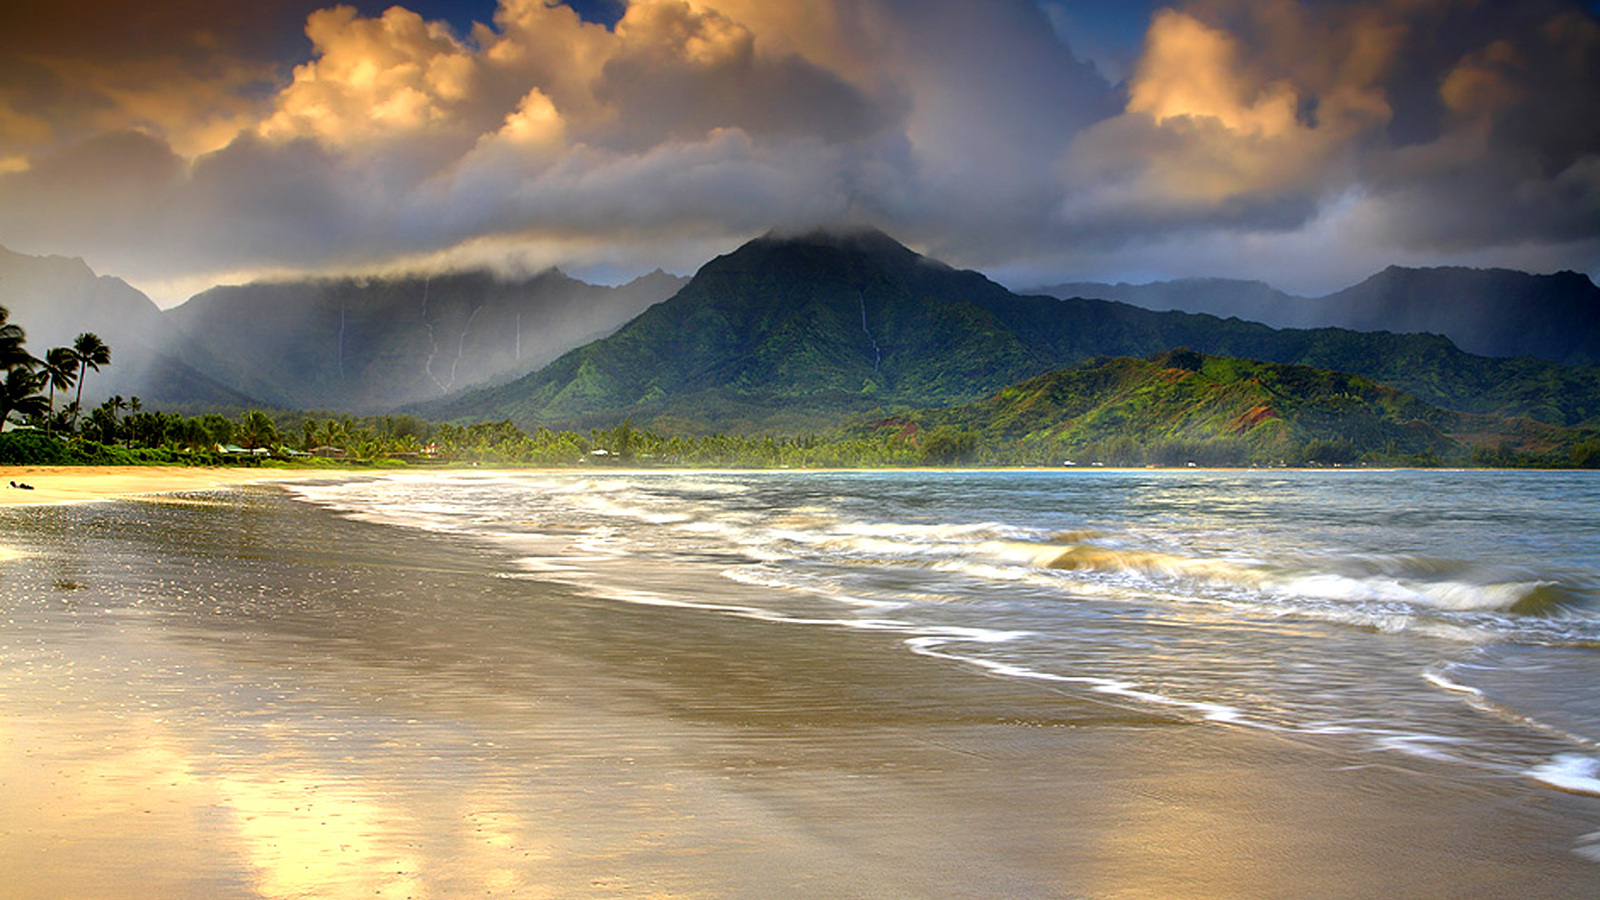 Tải miễn phí hình nền Hawaii đẹp và nền tảng 1600x900...: Tận hưởng không khí mát mẻ của đảo quốc Hawaii với hình nền đẹp nhất tại độ phân giải 1600x